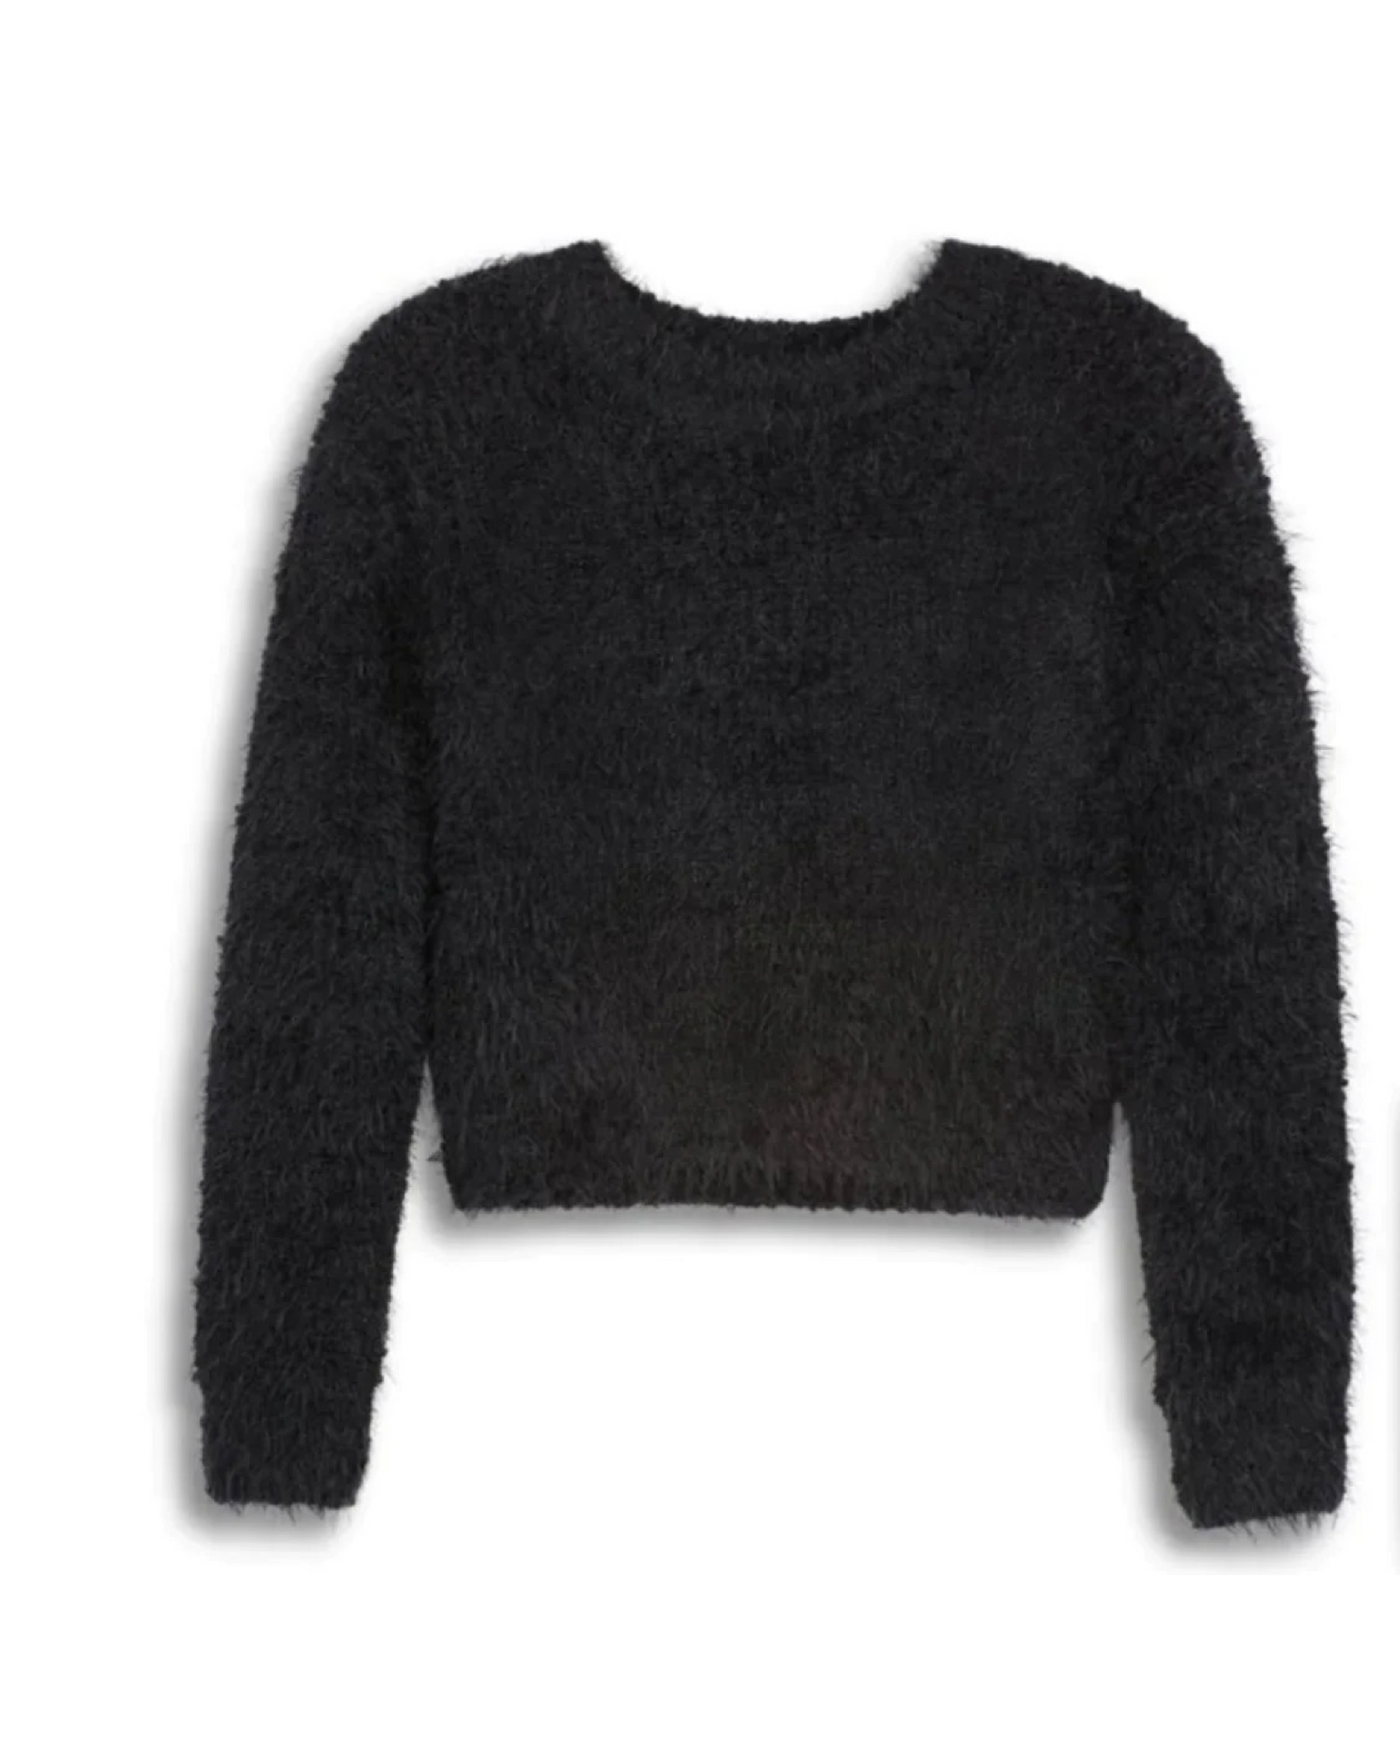 Katie J Black Mara Sweater